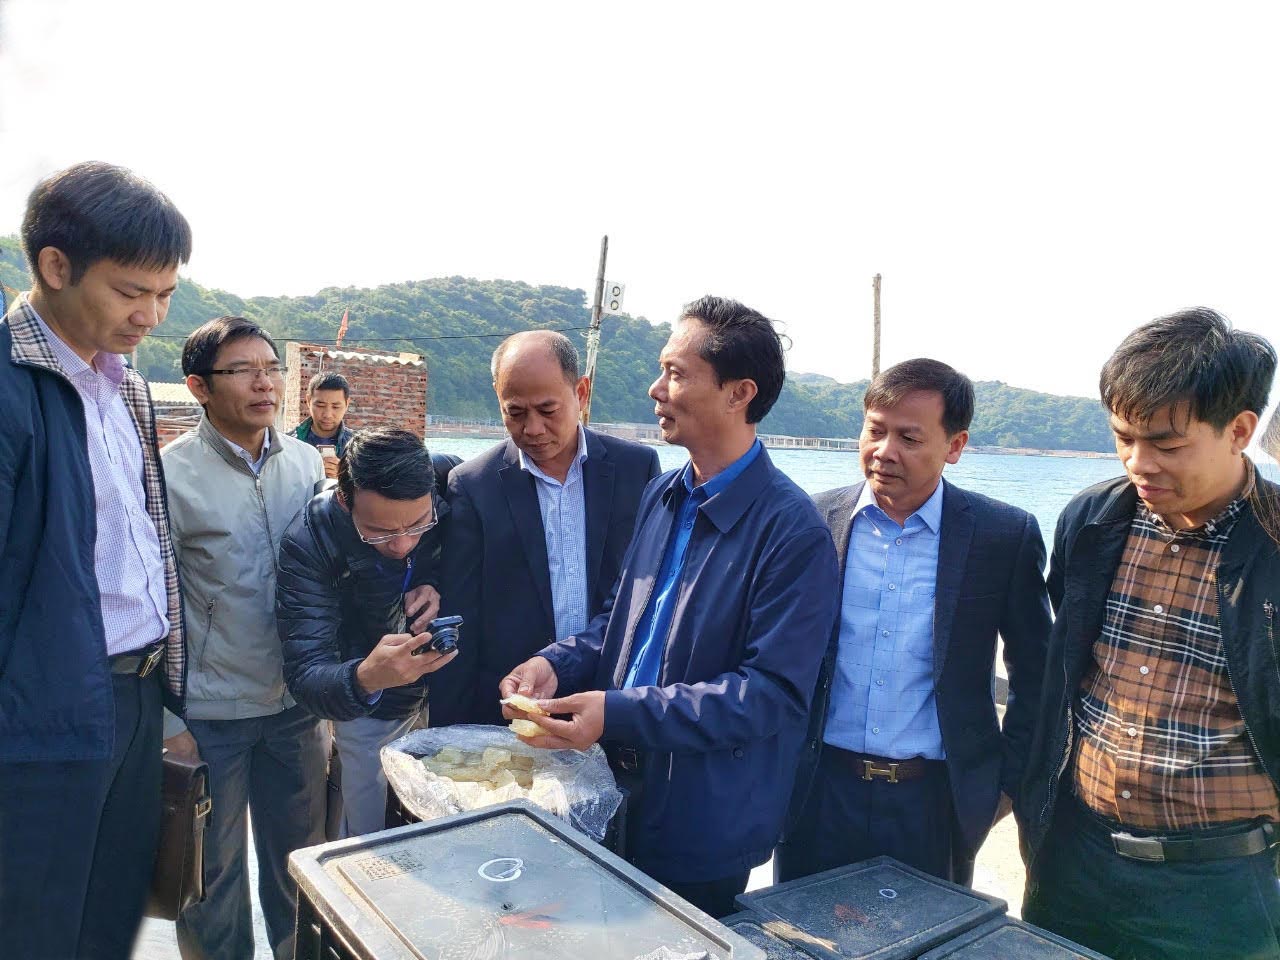  Đoàn công tác kiểm tra chất lượng sứa thành phẩm tại cơ sở của ông Lê Bá Tùng, khu 4 thị trấn Cô Tô.